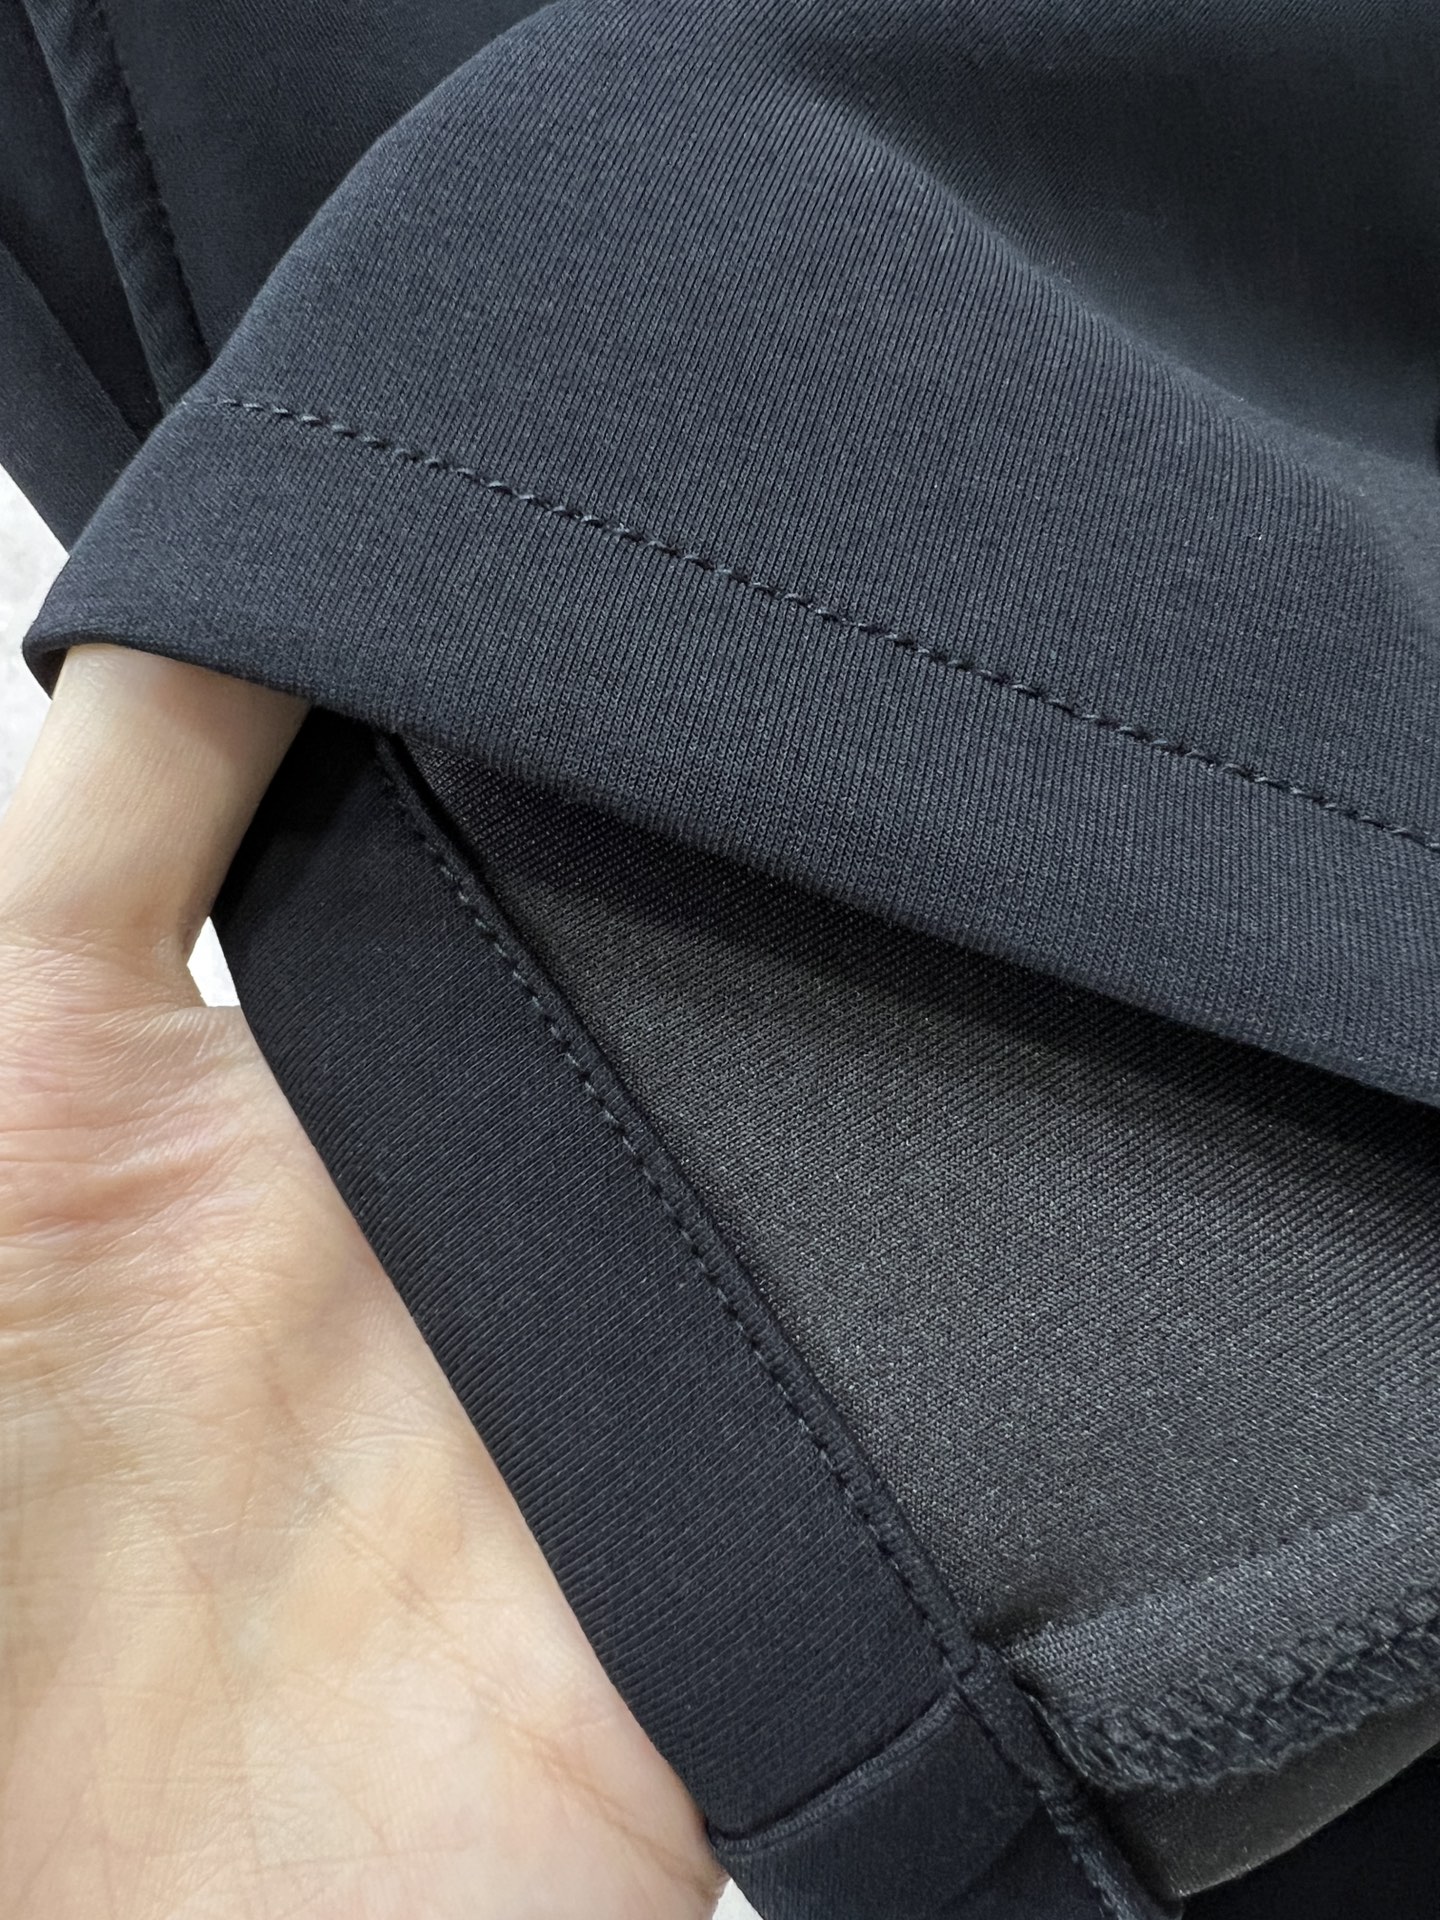 DESCENTE迪桑特24SS春夏新品男士休闲运动短裤甄选优质面料打造简约舒适独特设计缔造简约线条感版型